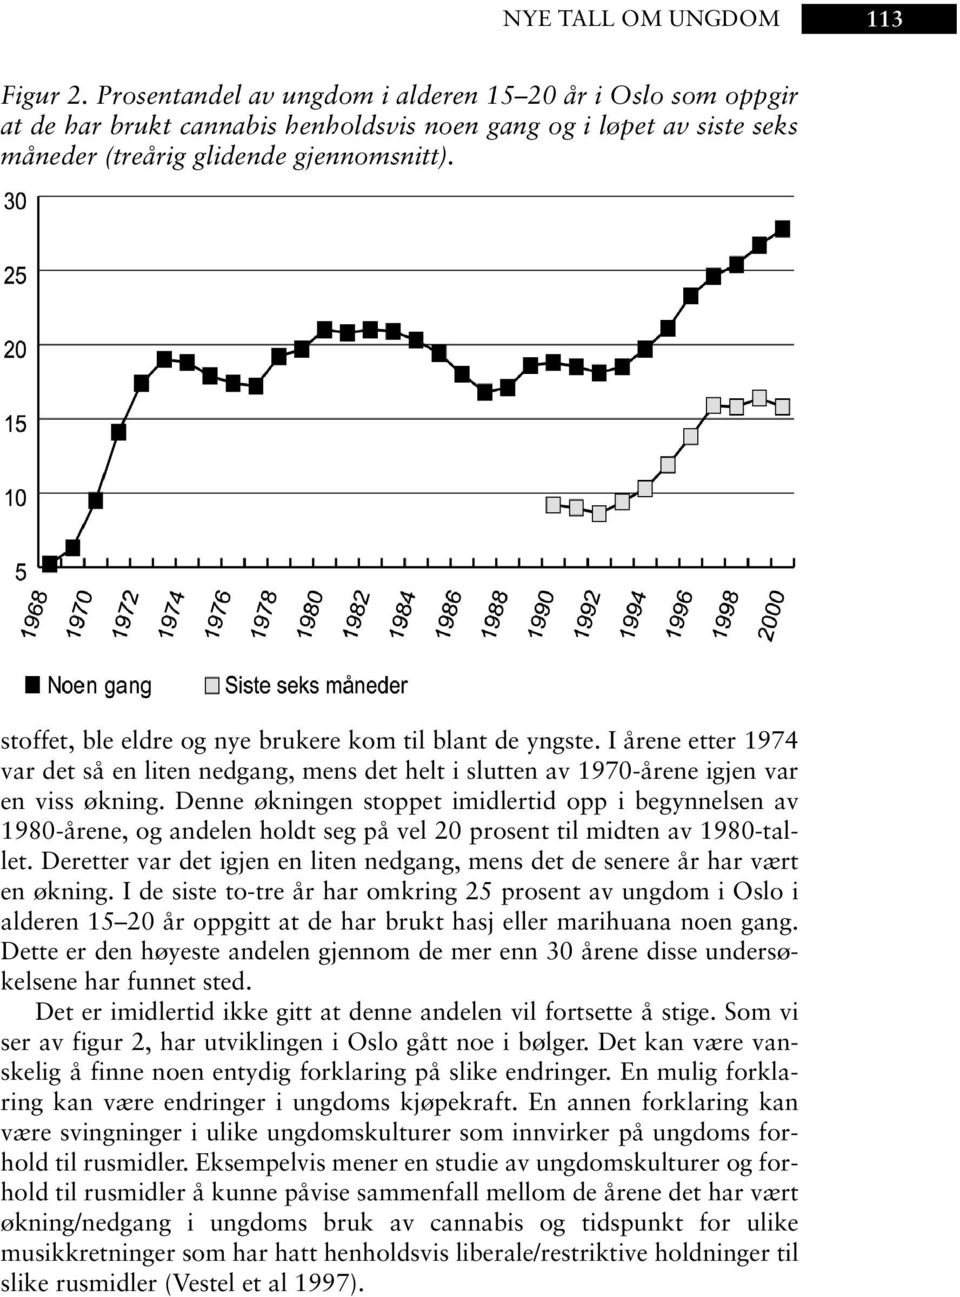 stoffet, ble eldre og nye brukere kom til blant de yngste. I årene etter 1974 var det så en liten nedgang, mens det helt i slutten av 1970-årene igjen var en viss økning.